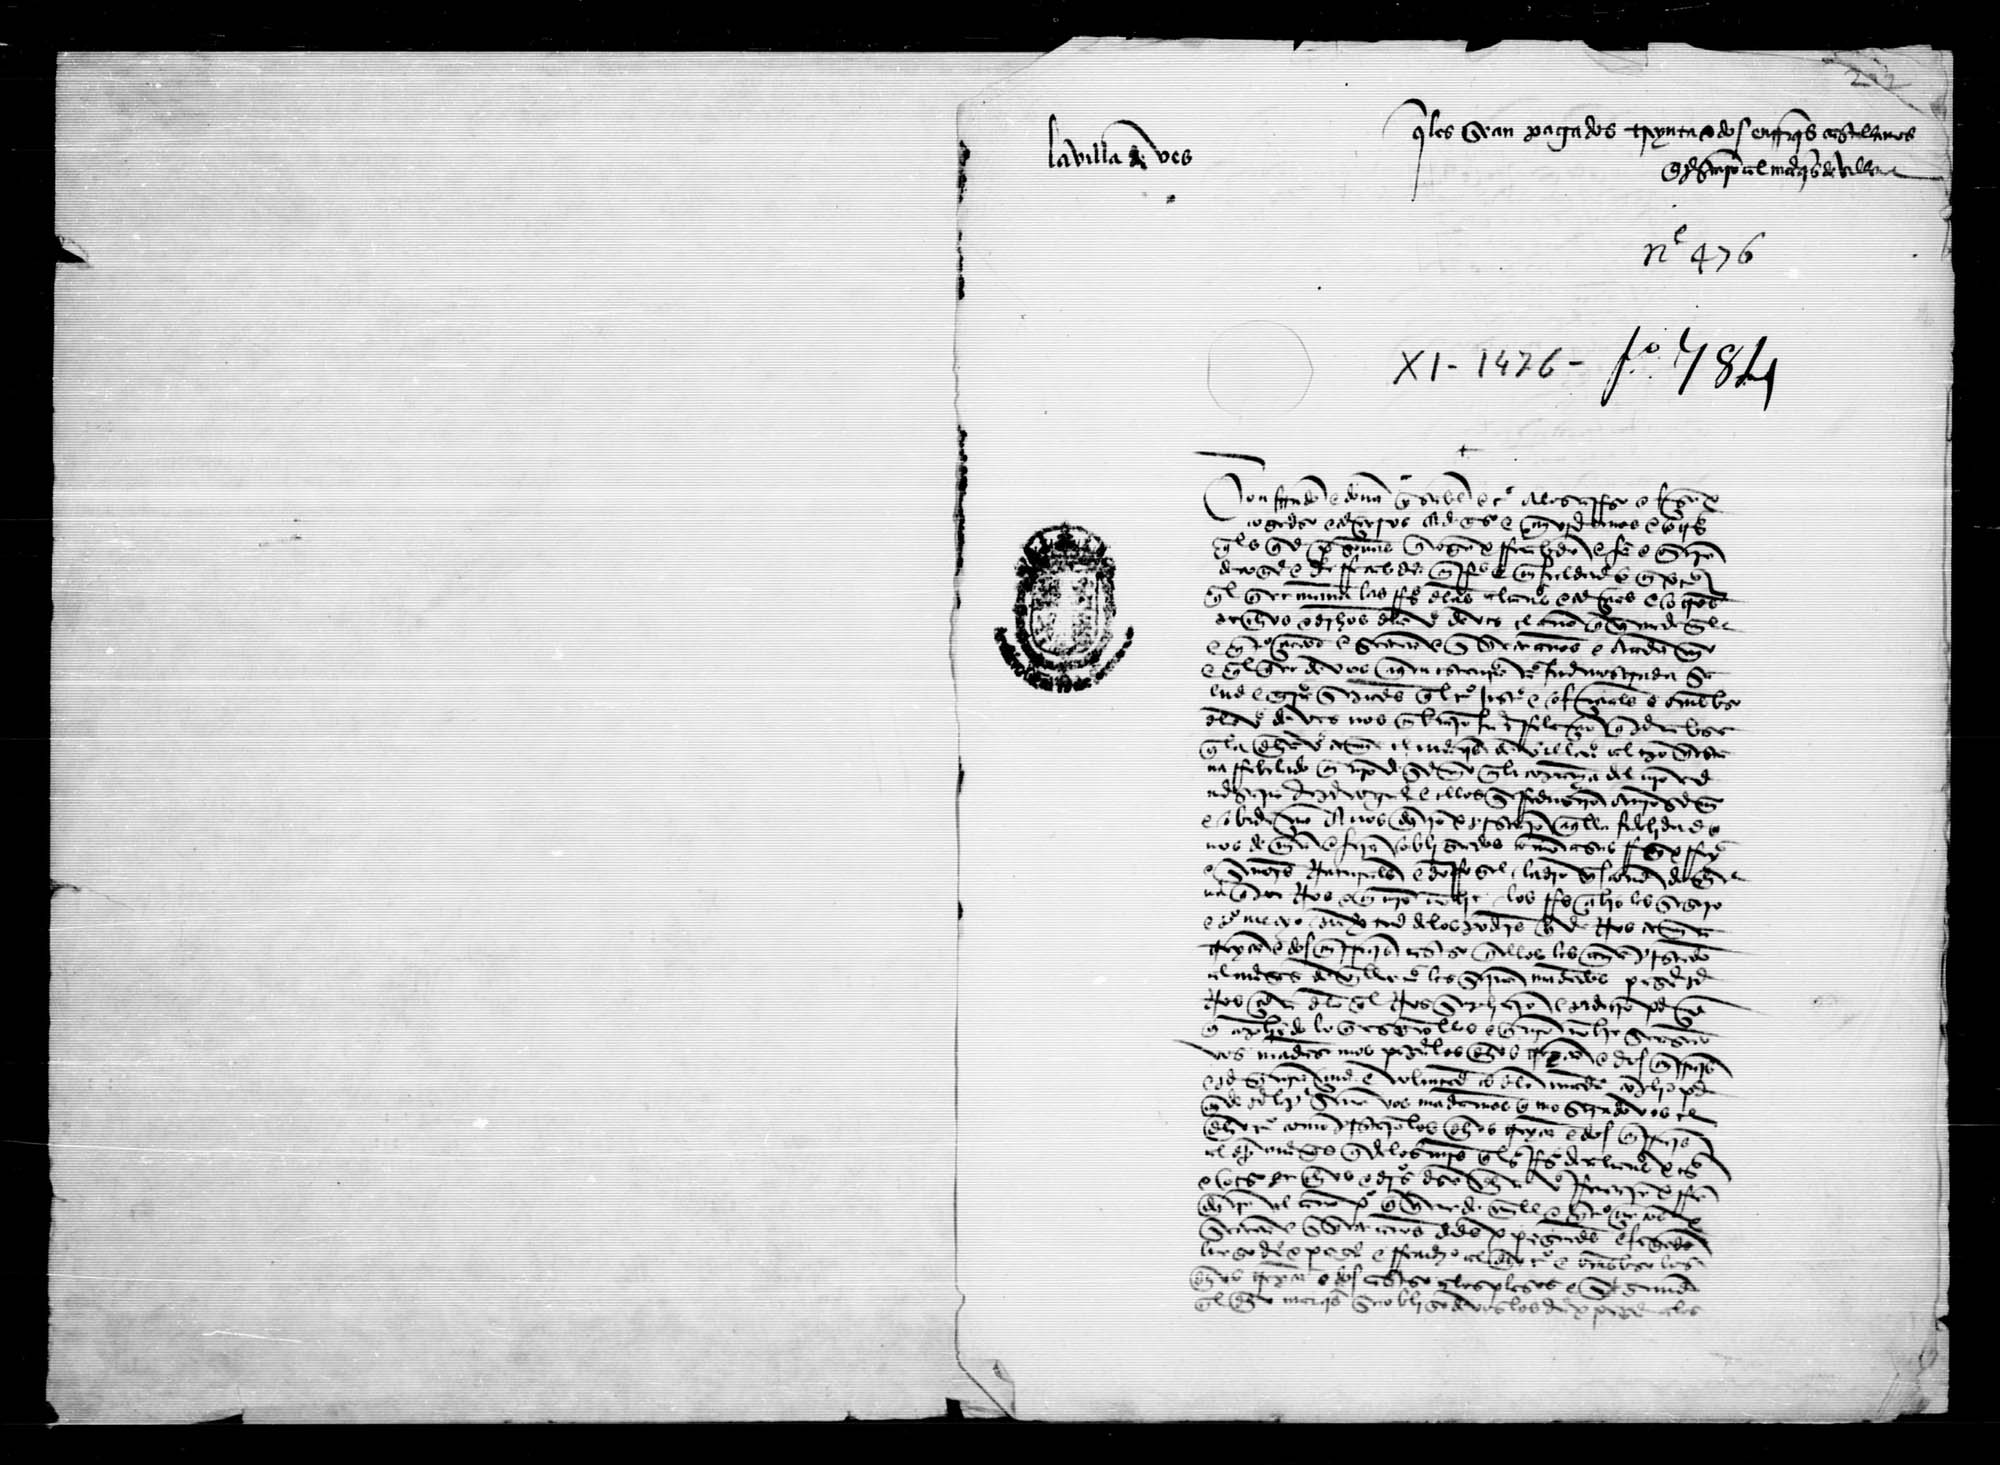 Carta a petición del concejo y vecinos de la villa de Ves para que se paguen a éstos 32 enriques castellanos que habían prestado al marqués de Villena.